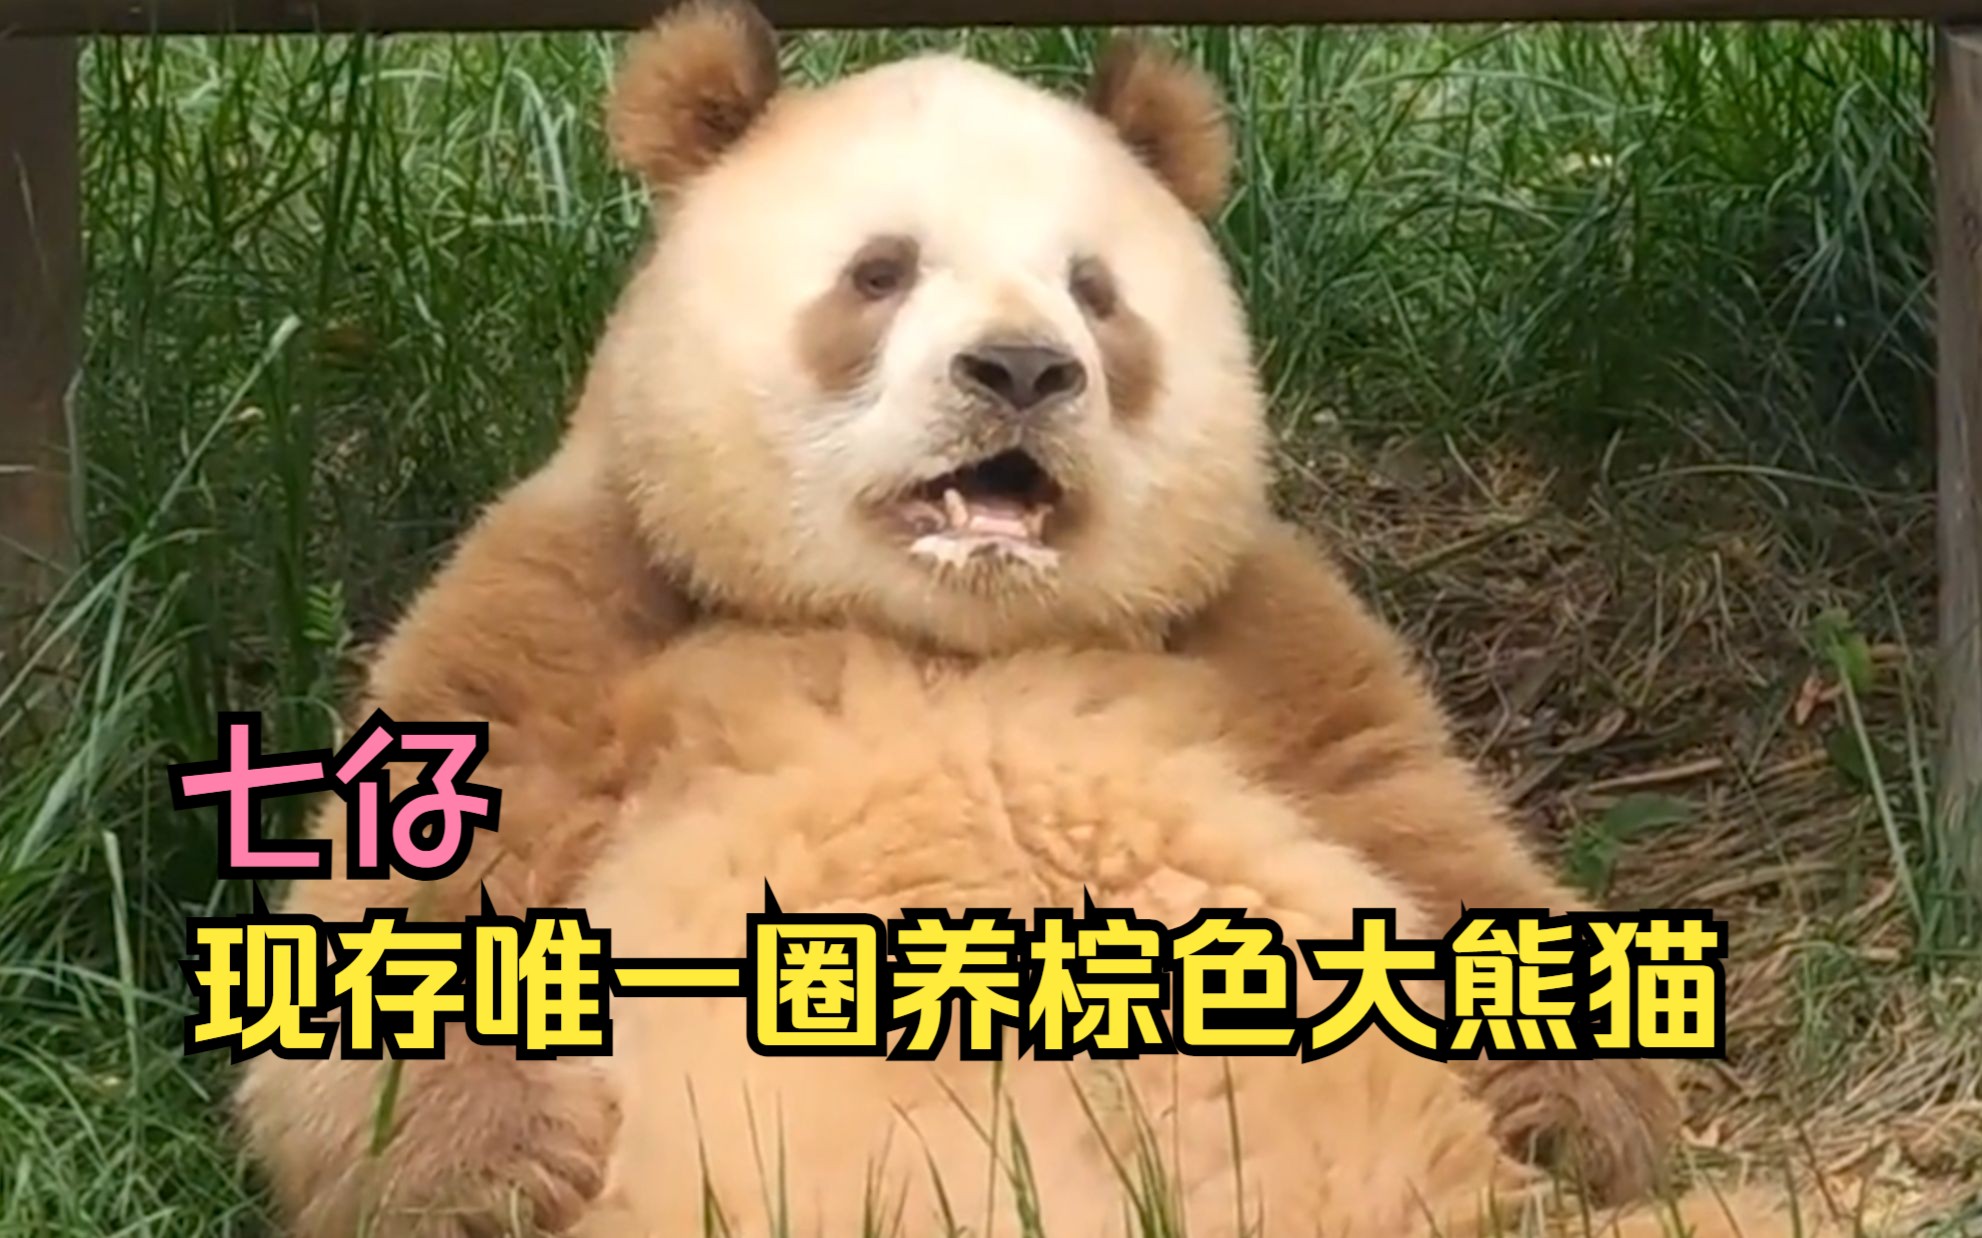 现存唯一圈养棕色大熊猫,七仔!地主家的傻儿子